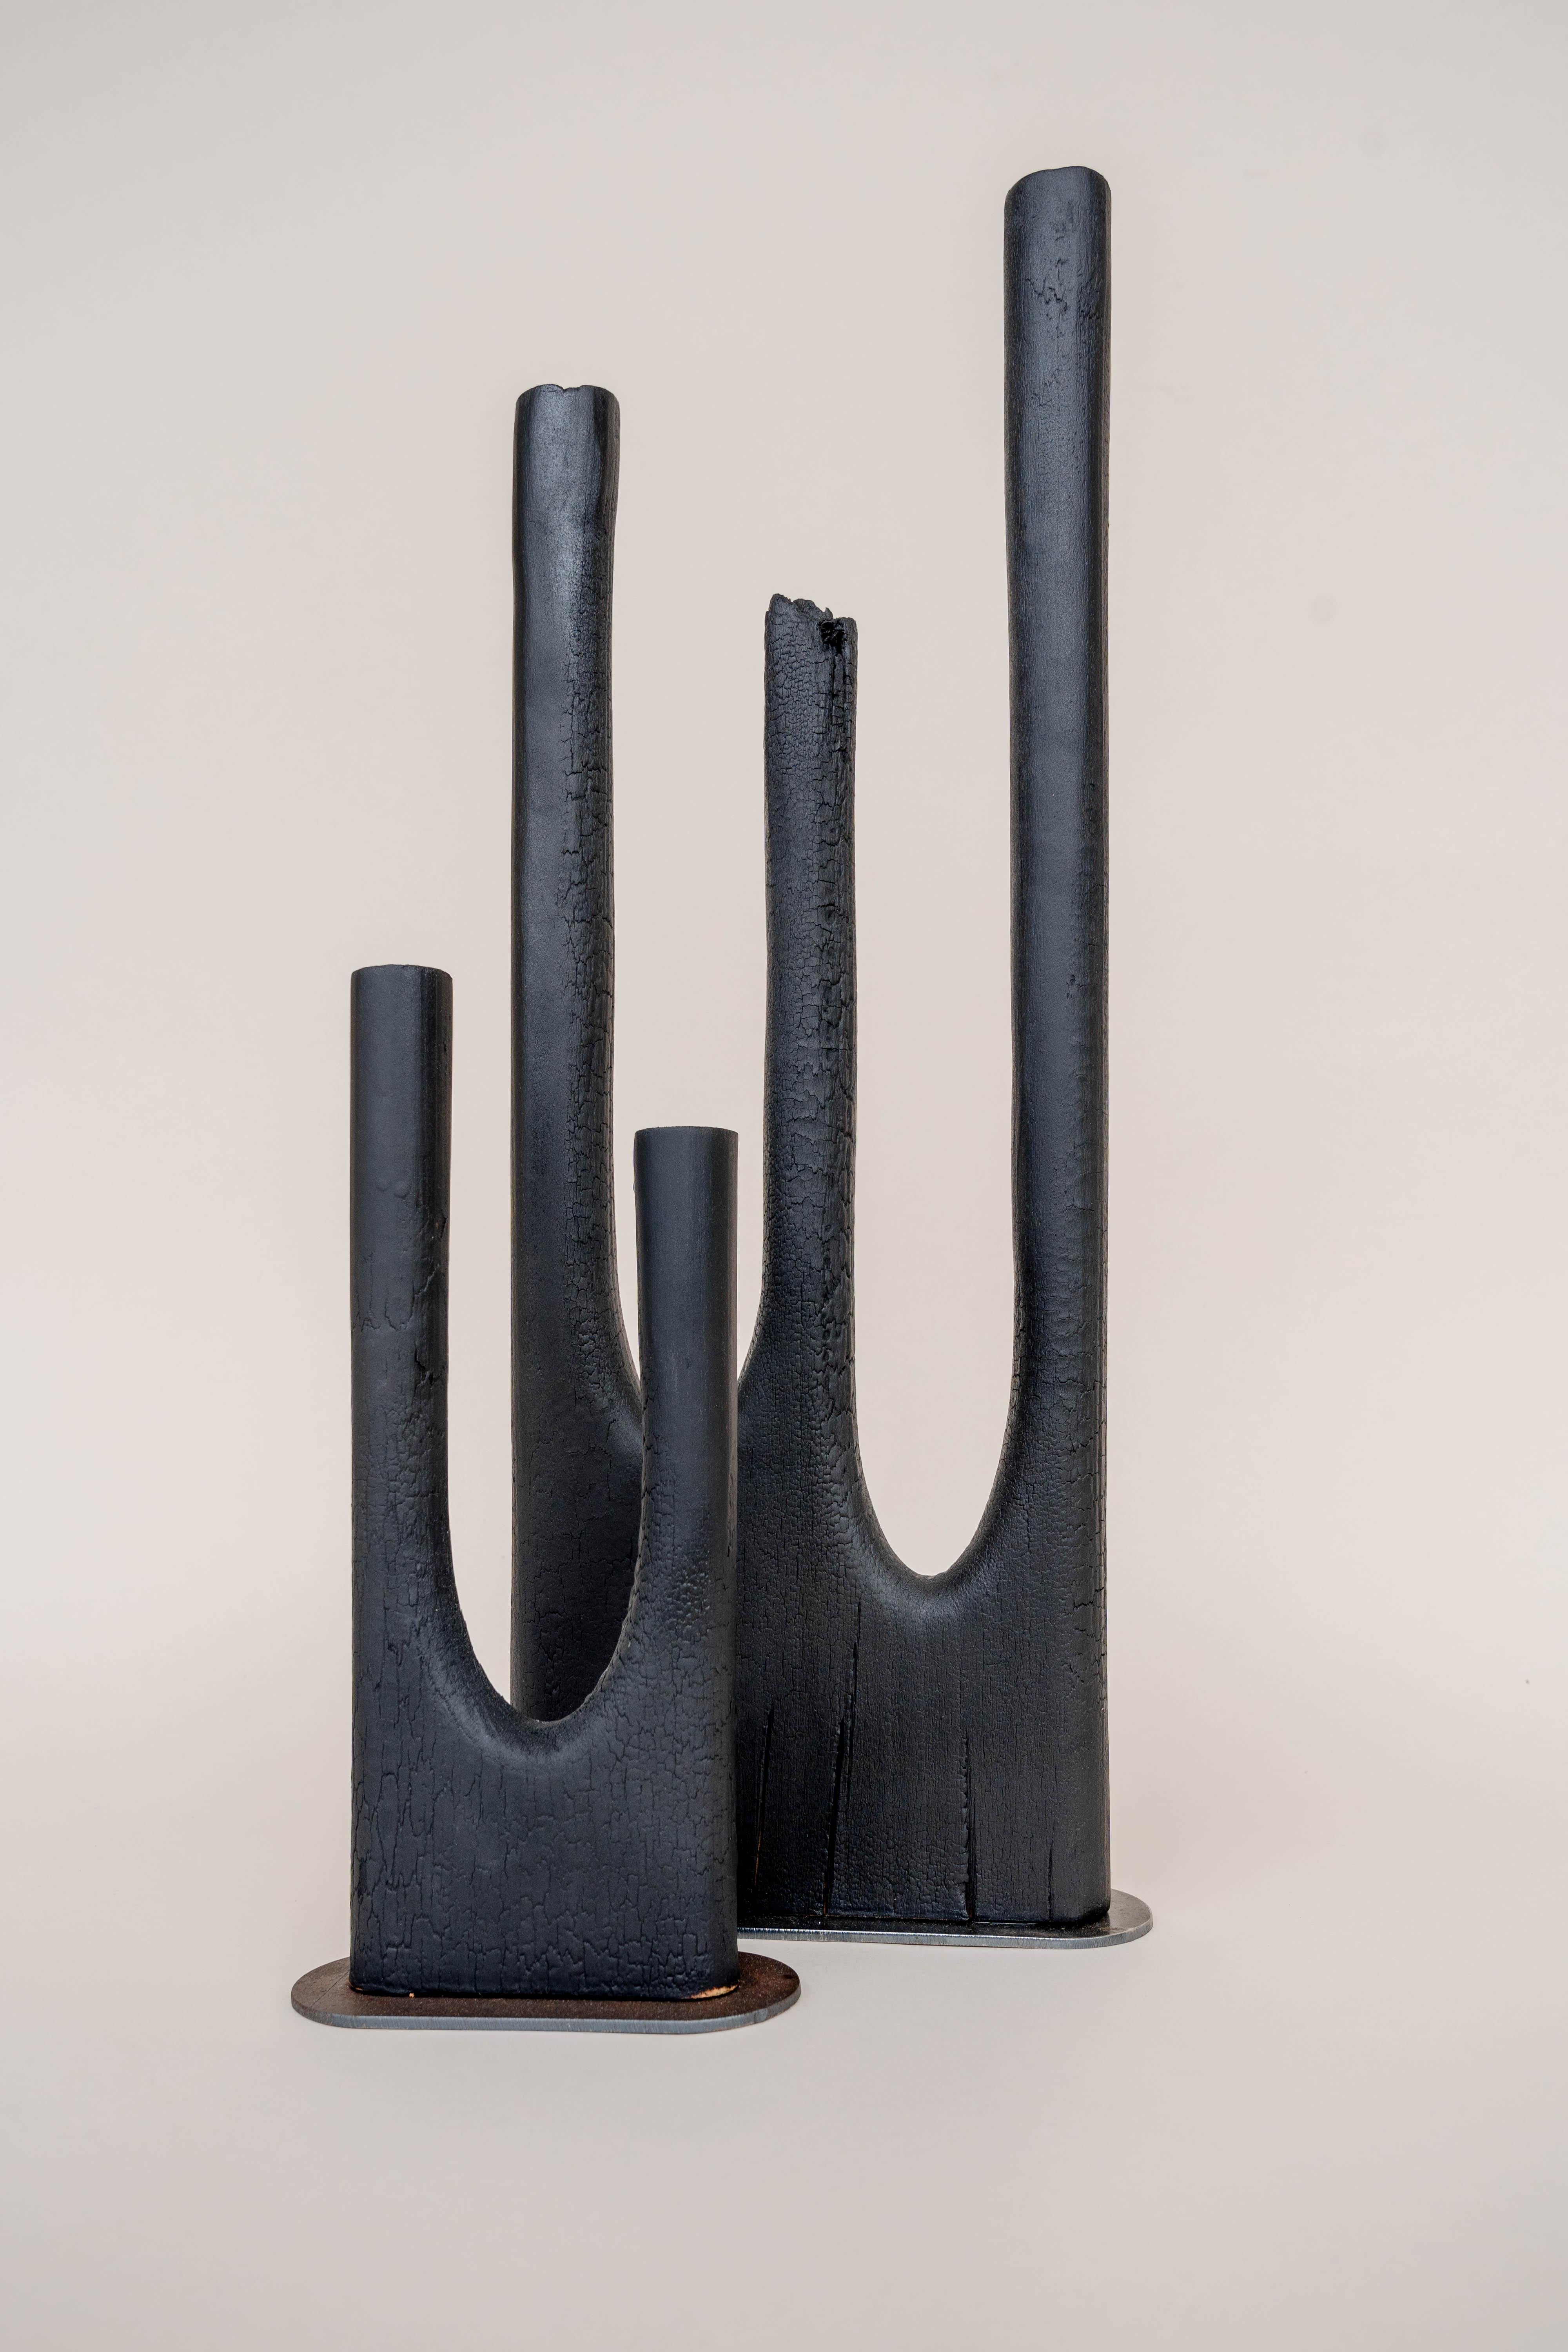 Wood Dou Vase by Daniel Elkayam